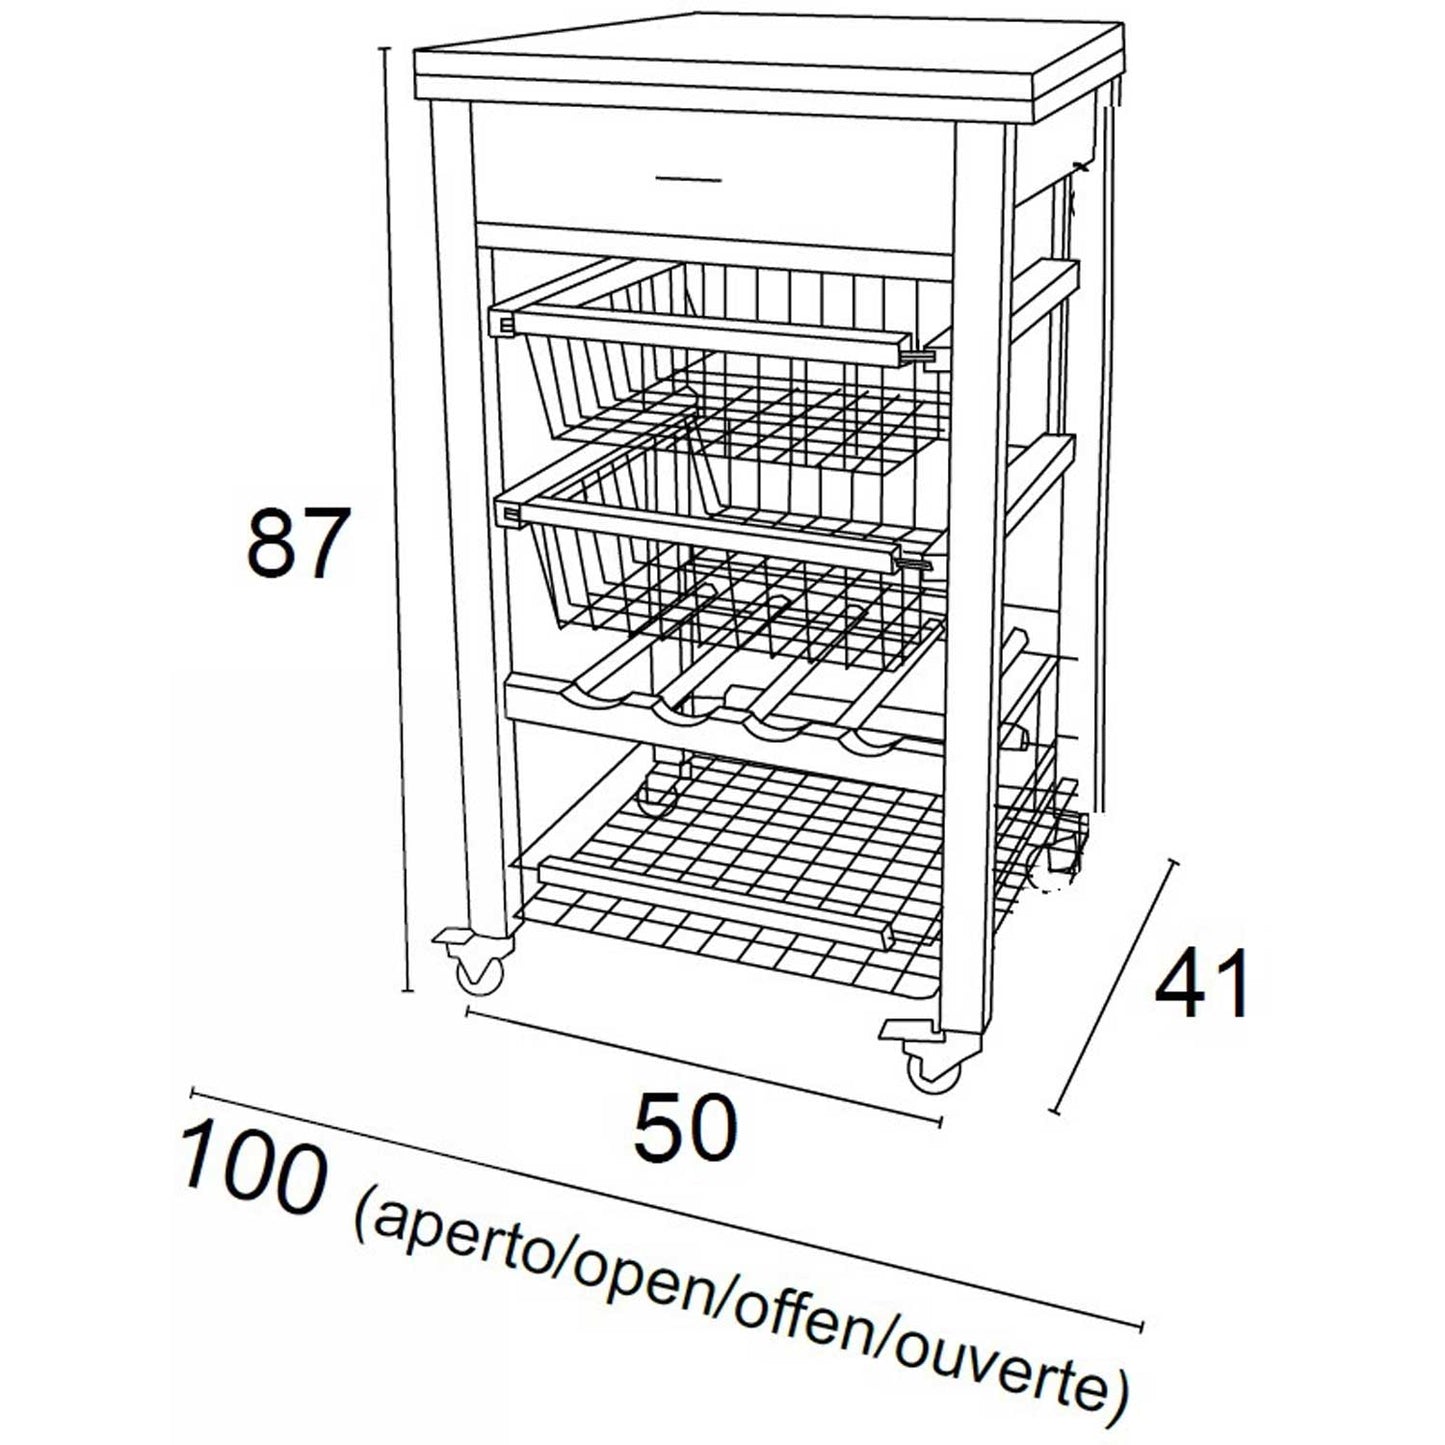 ARIT - Küchenwagen mit arbeitsplatte GASTONE, Arbeitsfläche (50 bis 100 cm) Küchenrollwagen, Küchenwagen holz, Weiß, 4